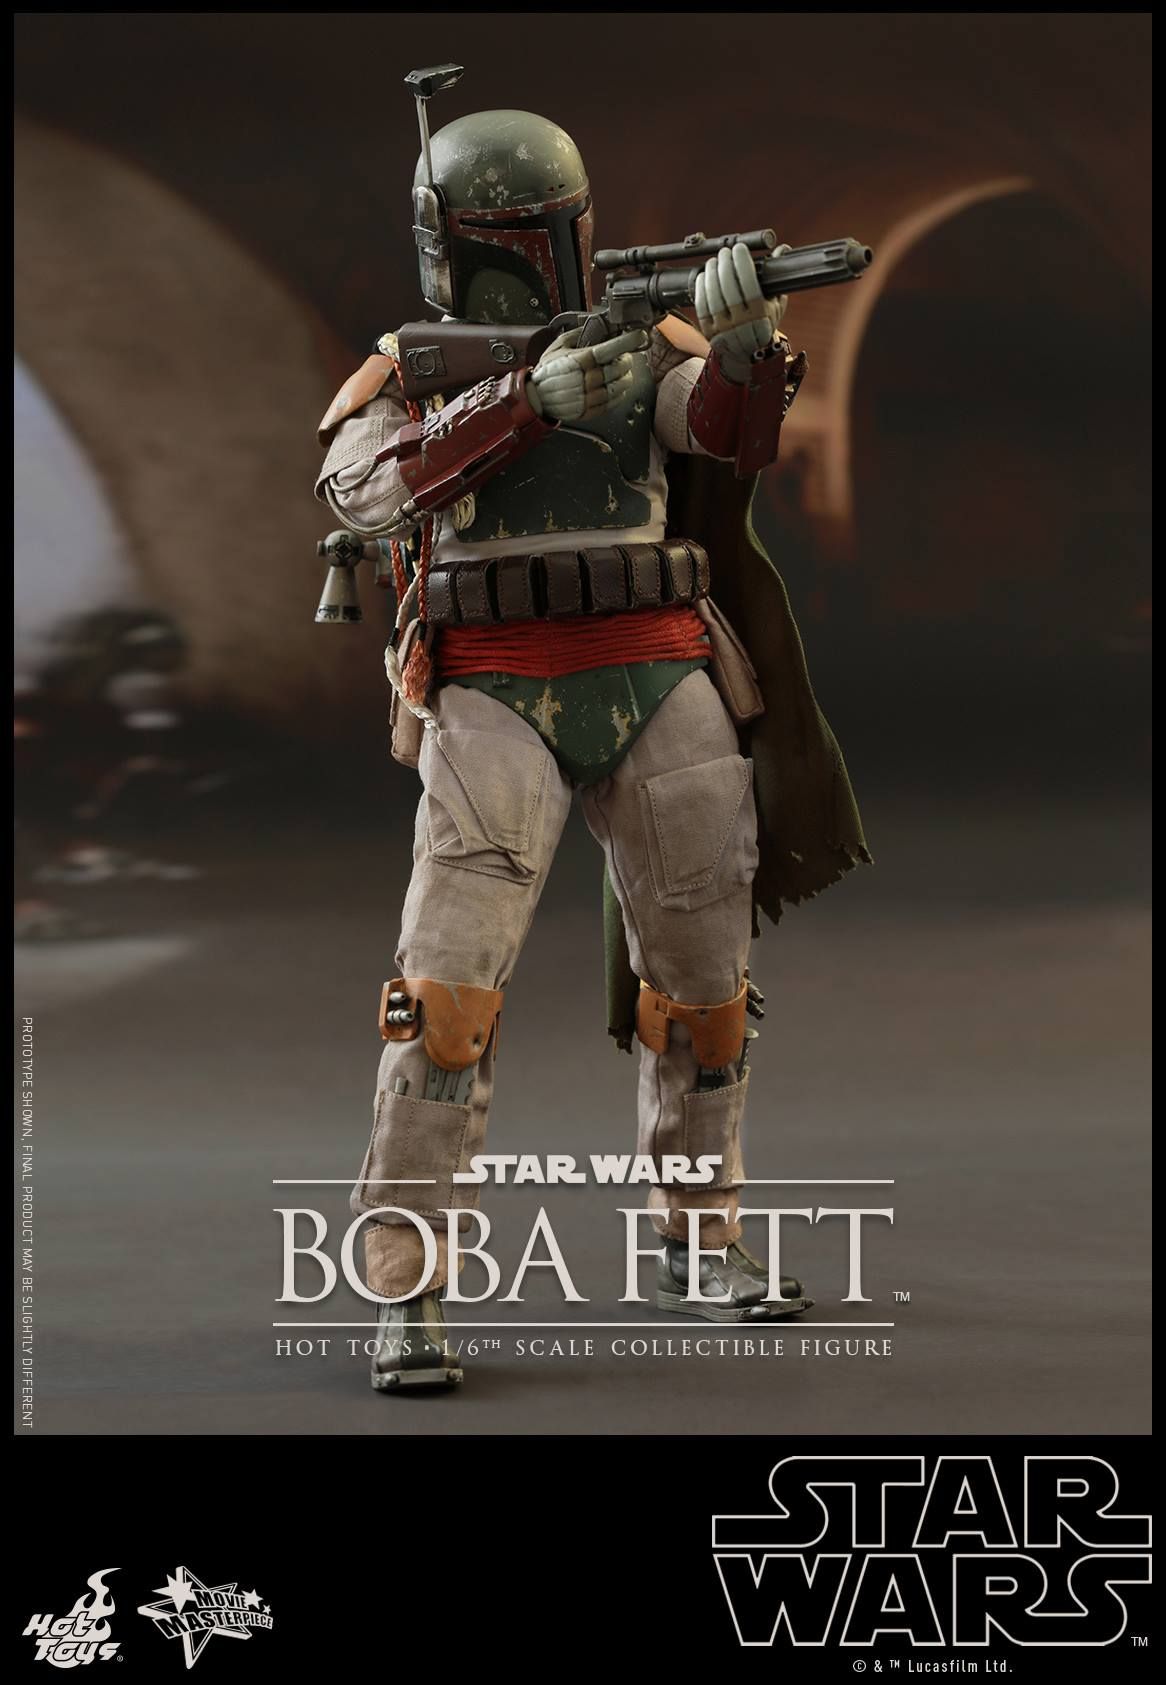 Star Wars Boba Fett Hot Toys Deluxe Figure 16